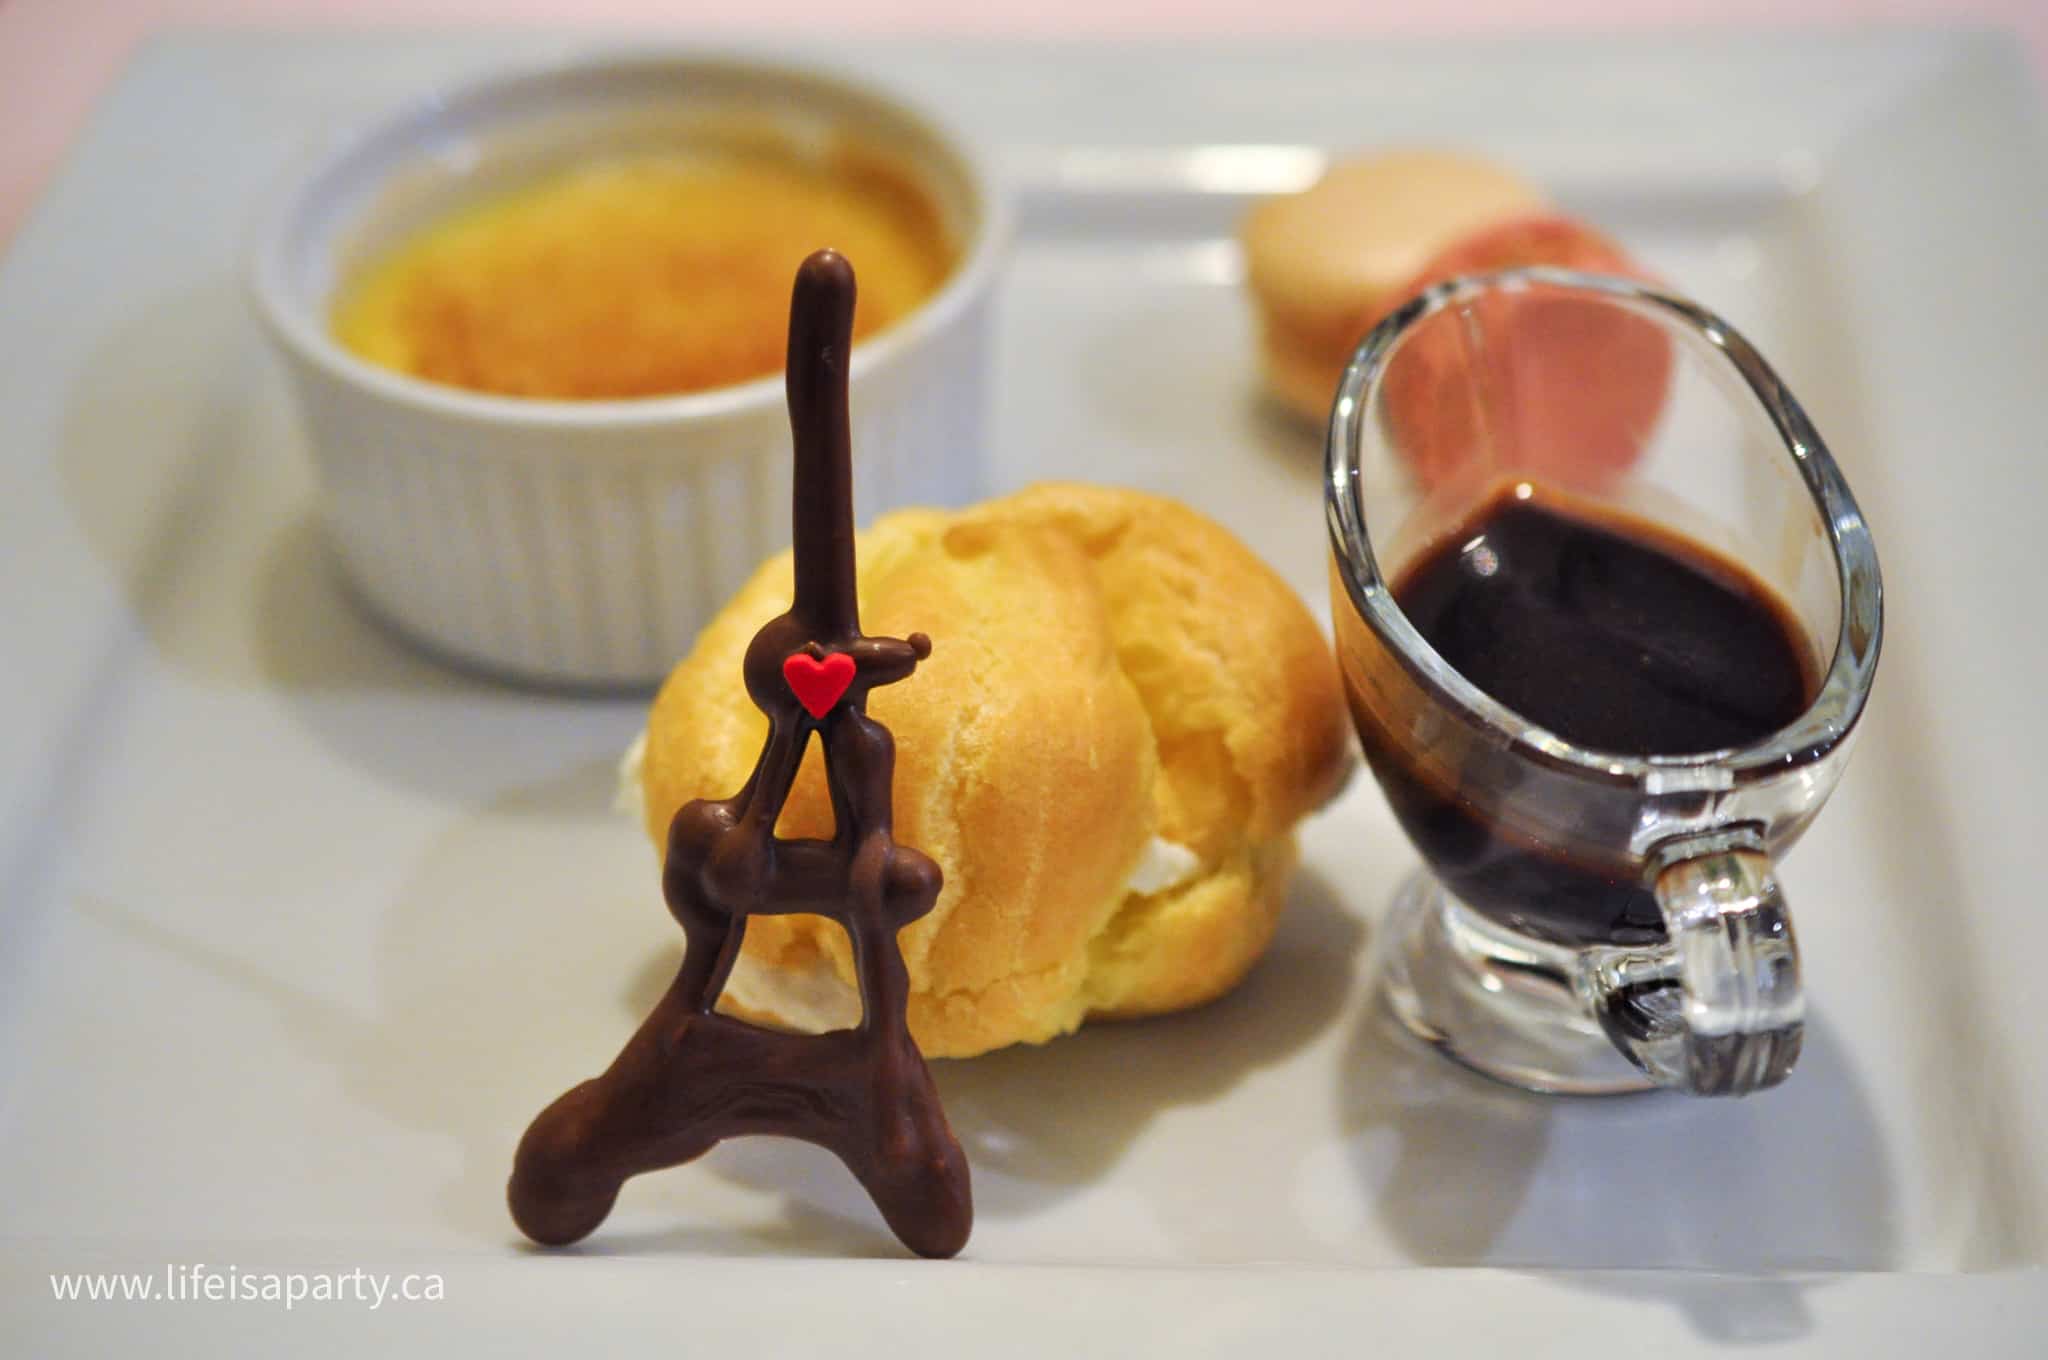 French dessert ideas